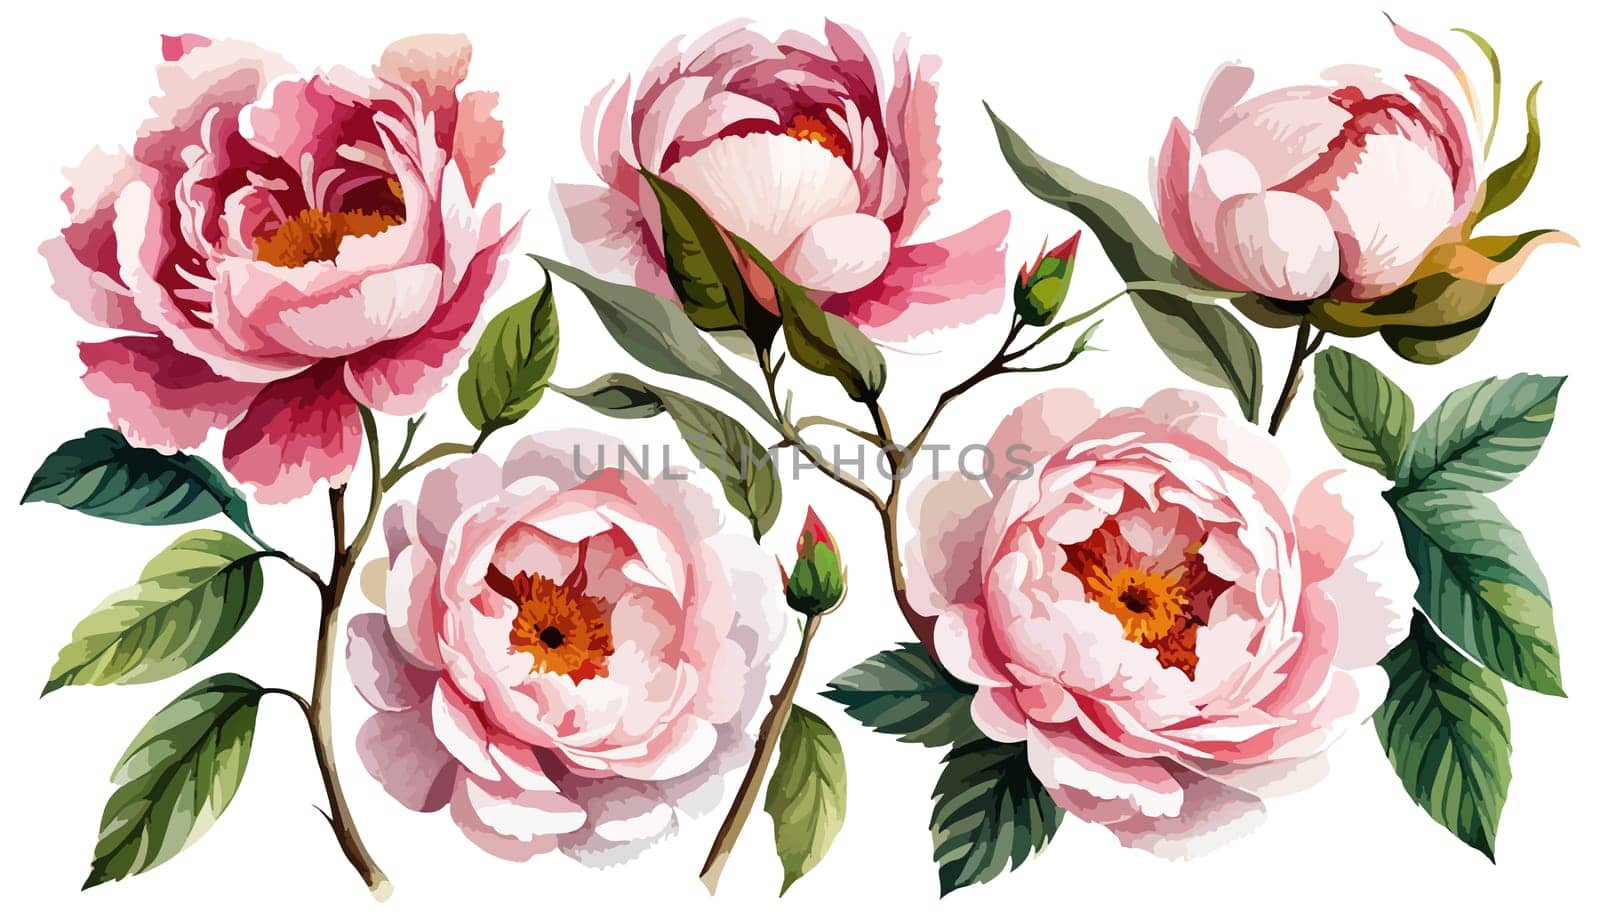 Watercolor floral set. Pink peonies flower, green leaves individual elements by EkaterinaPereslavtseva